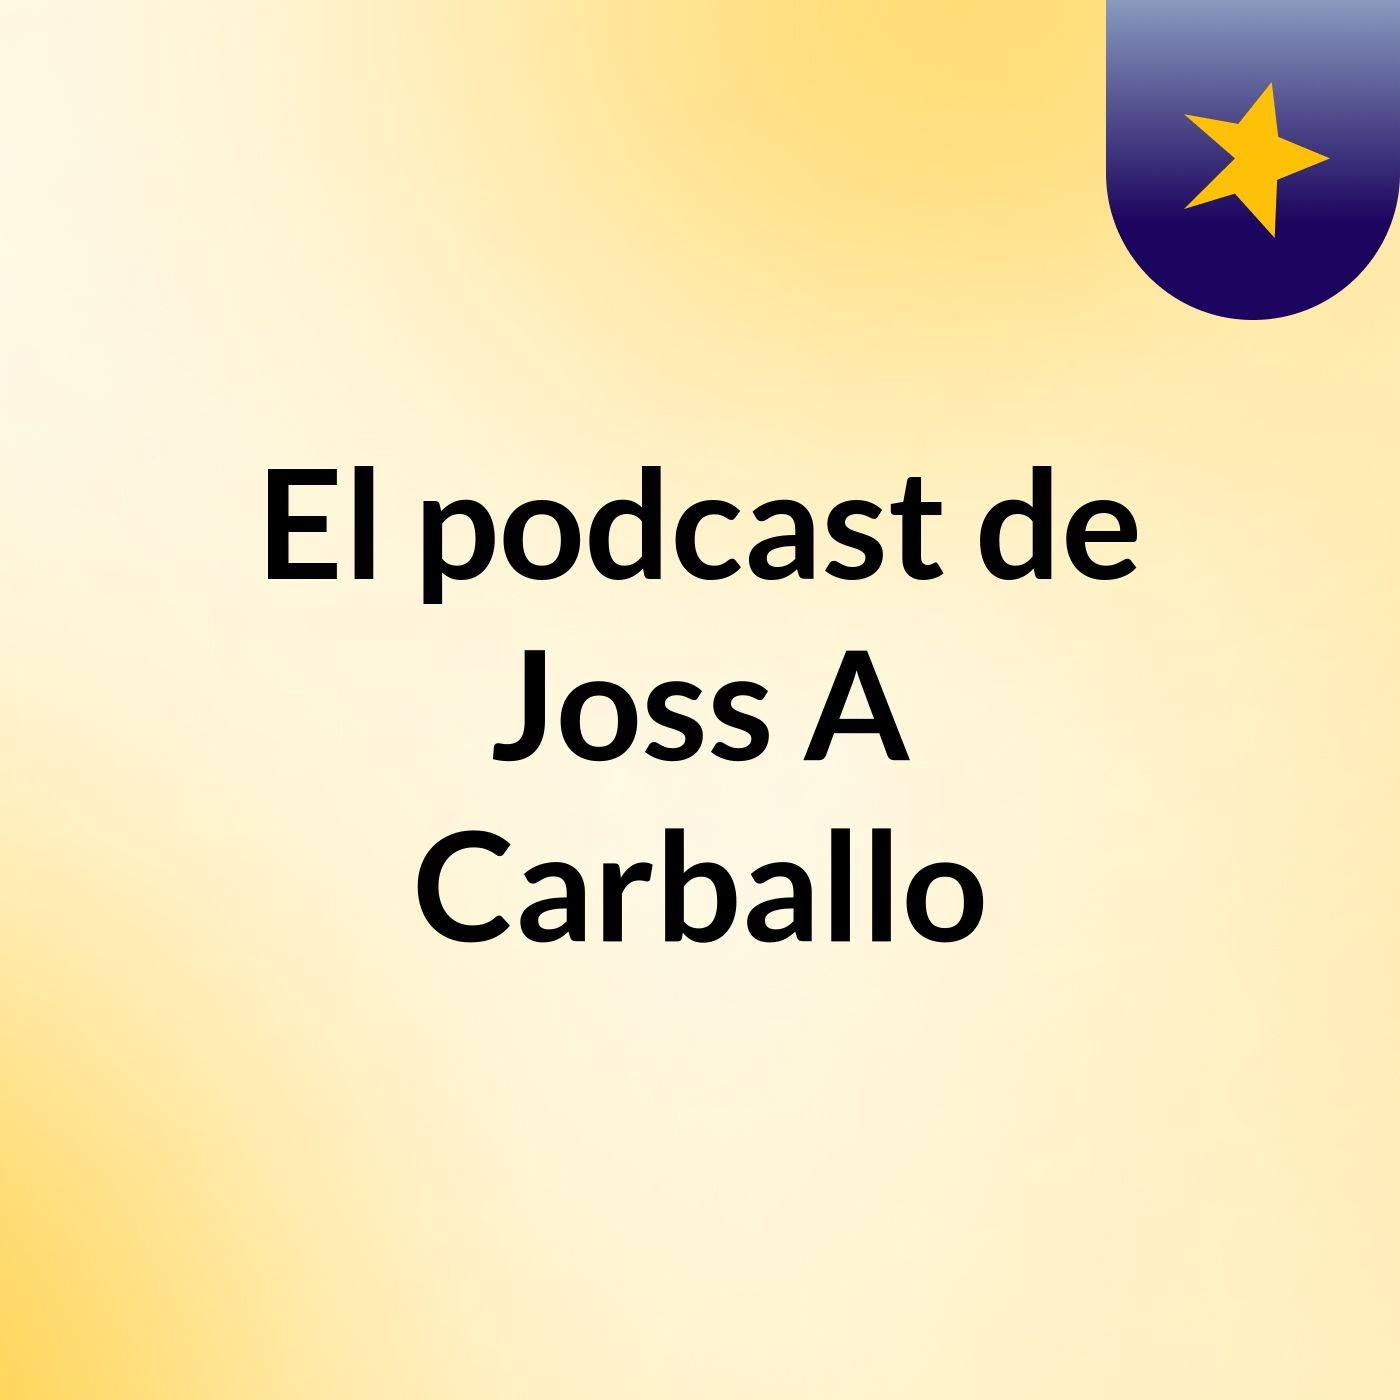 El podcast de Joss A Carballo